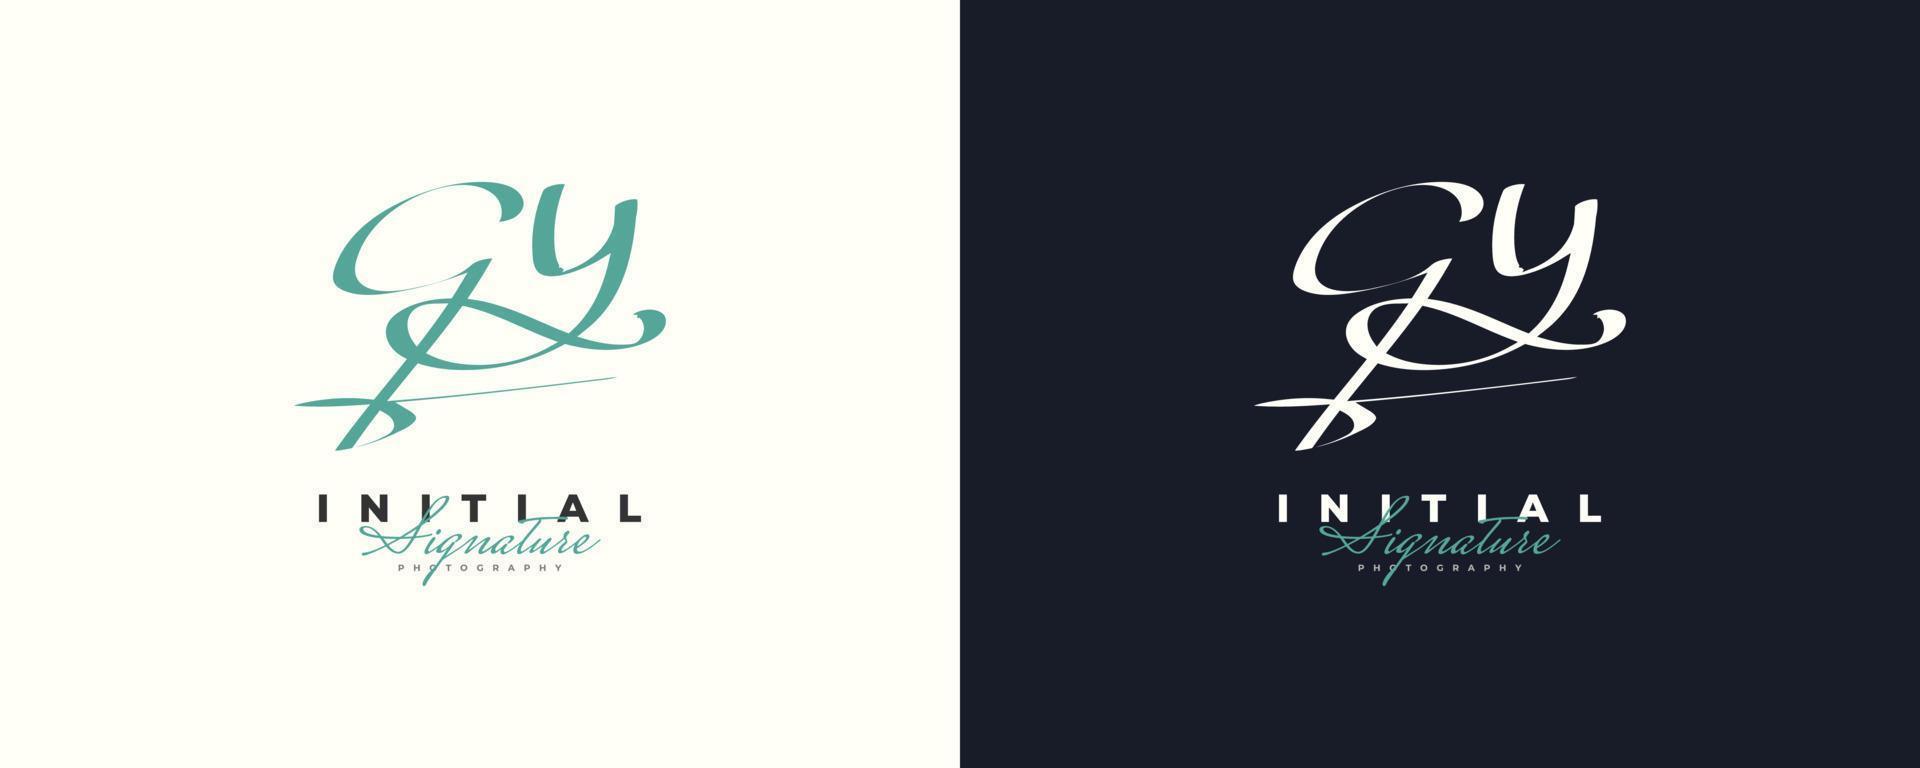 initial g och y logotypdesign i elegant och minimalistisk handstil. gy signaturlogotyp eller symbol för bröllop, mode, smycken, boutique och affärsidentitet vektor